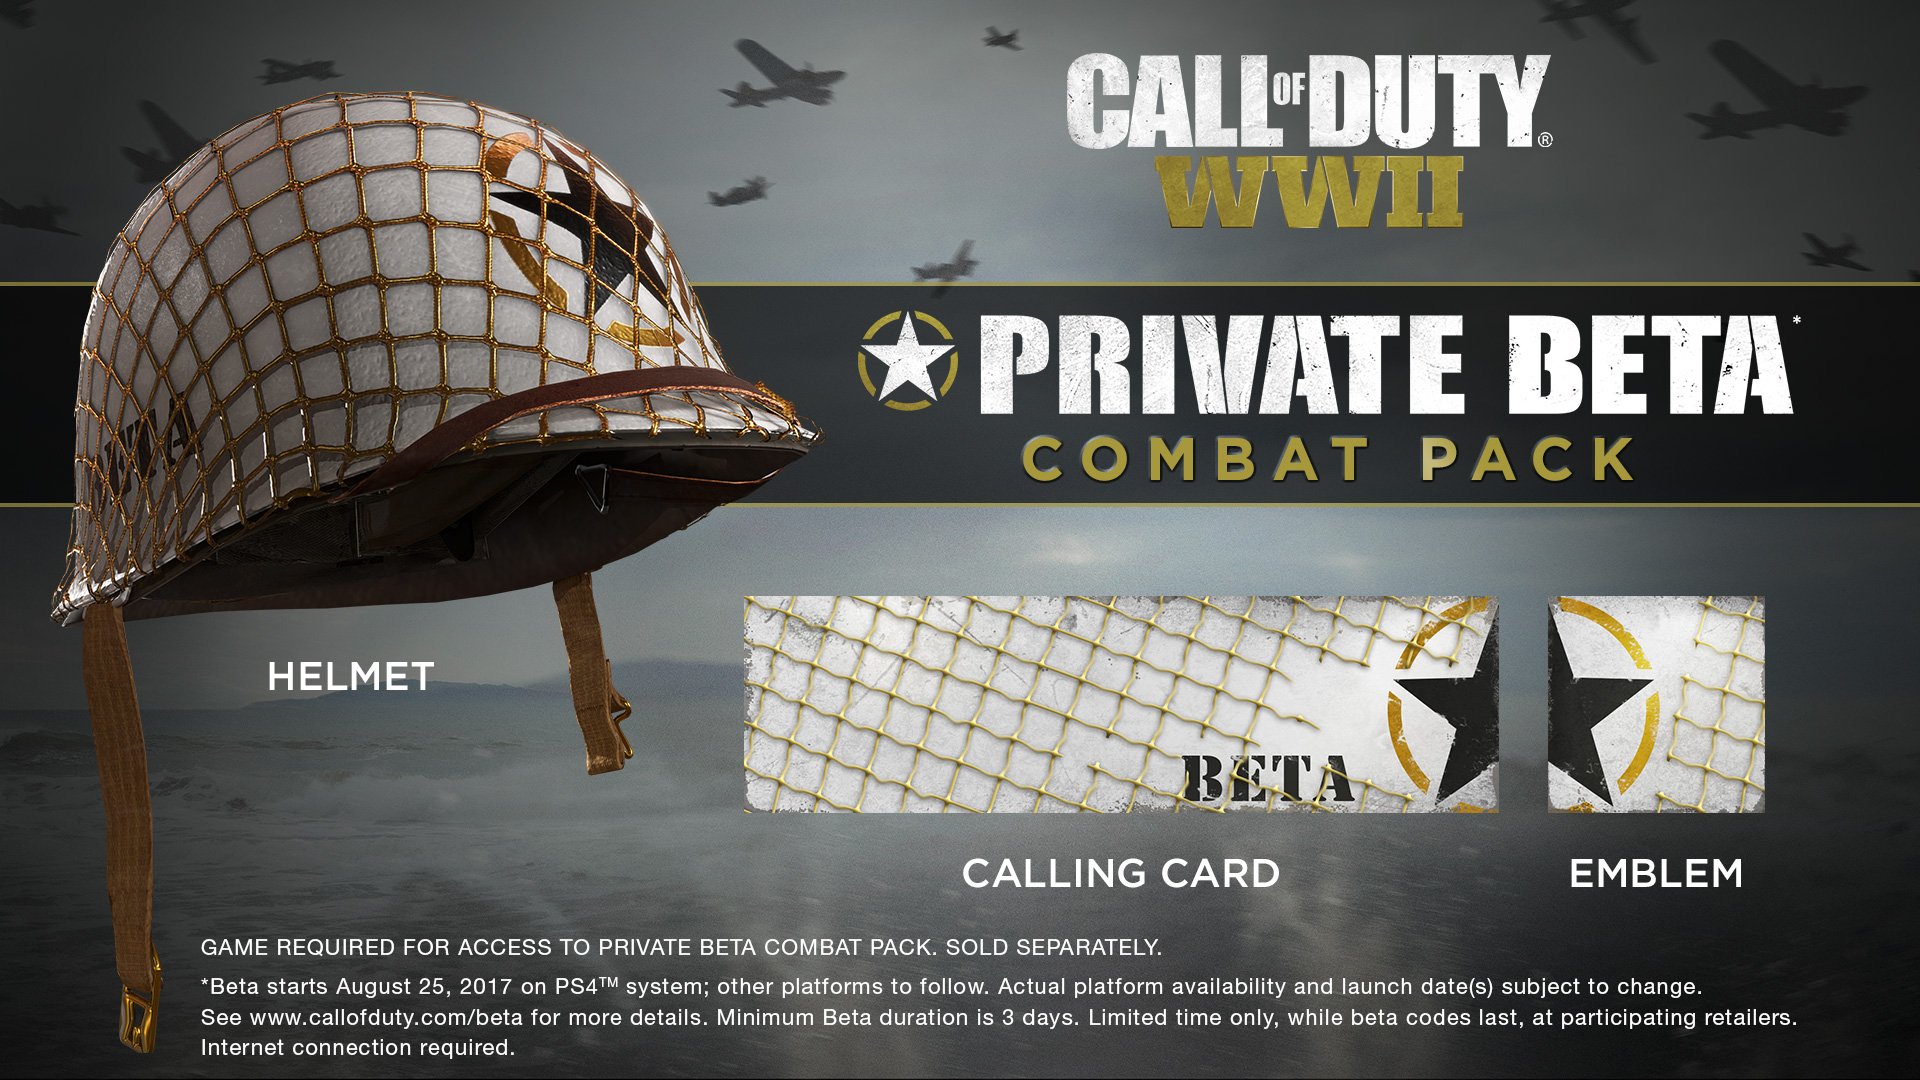 Accede a la BETA de Call of Duty: WWII en PlayStation 4 y llévate este Pack de Combate completamente gratis